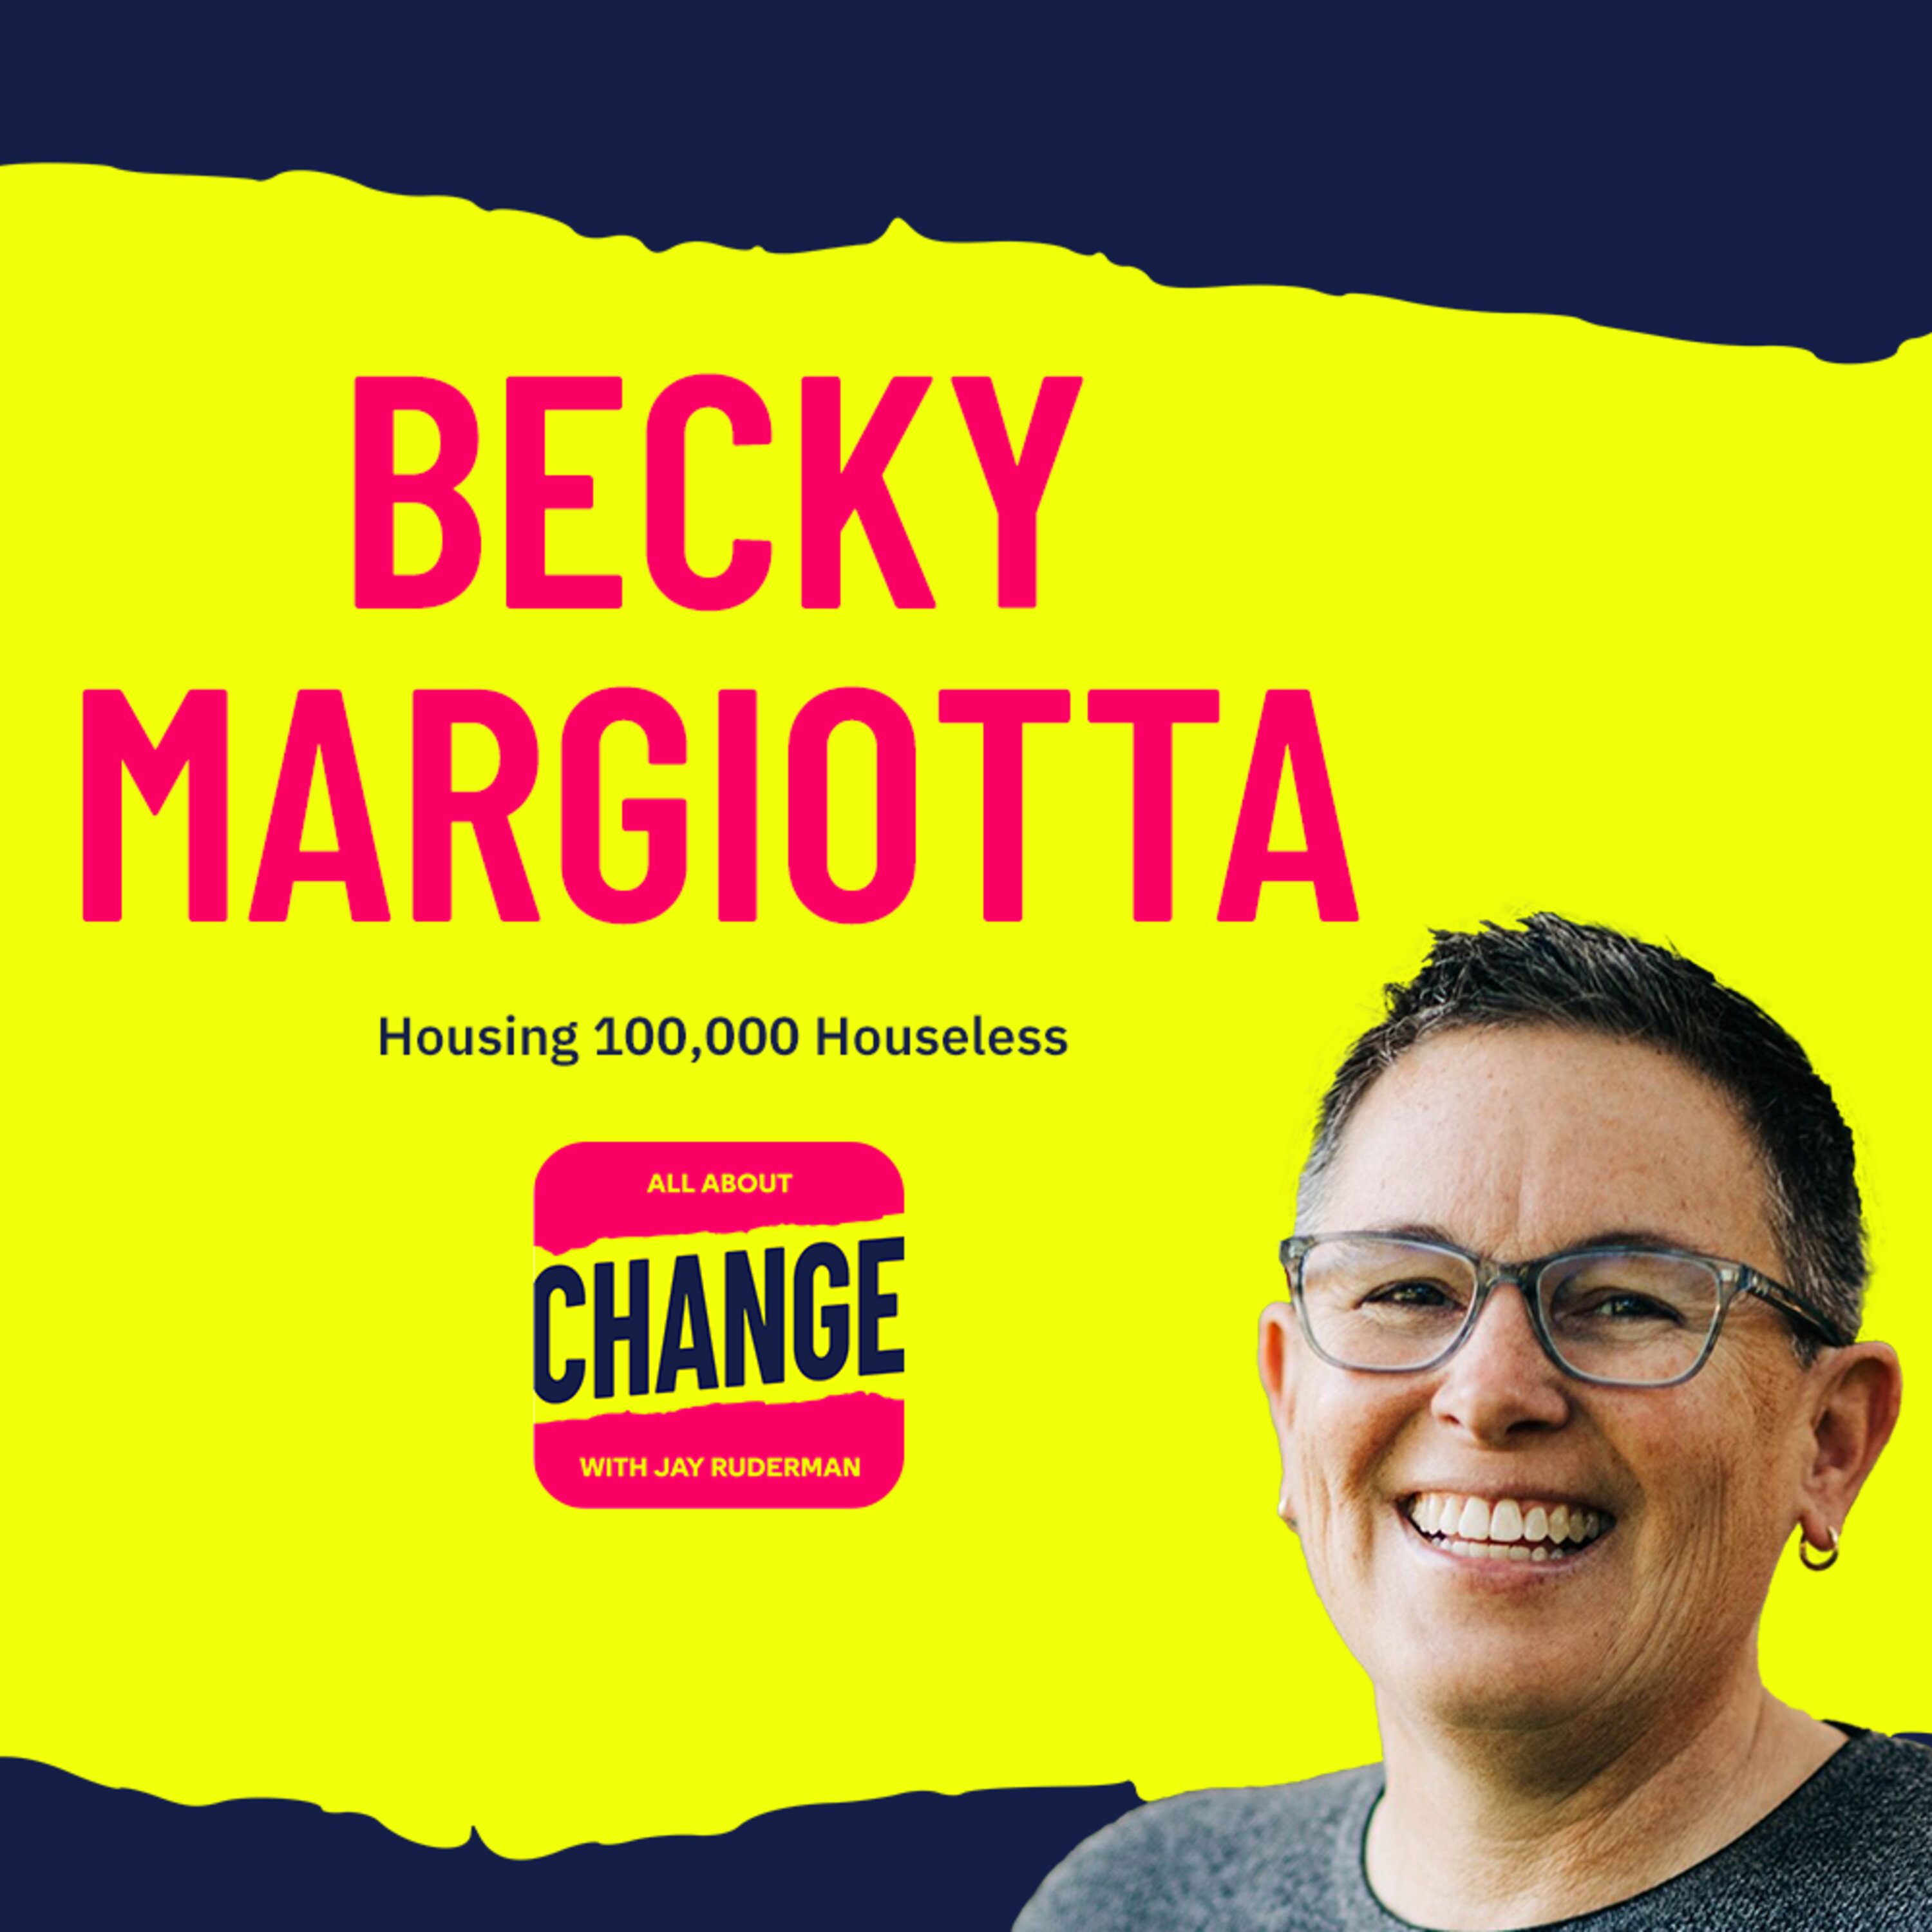 Becky Margiotta - Housing 100,000 Houseless